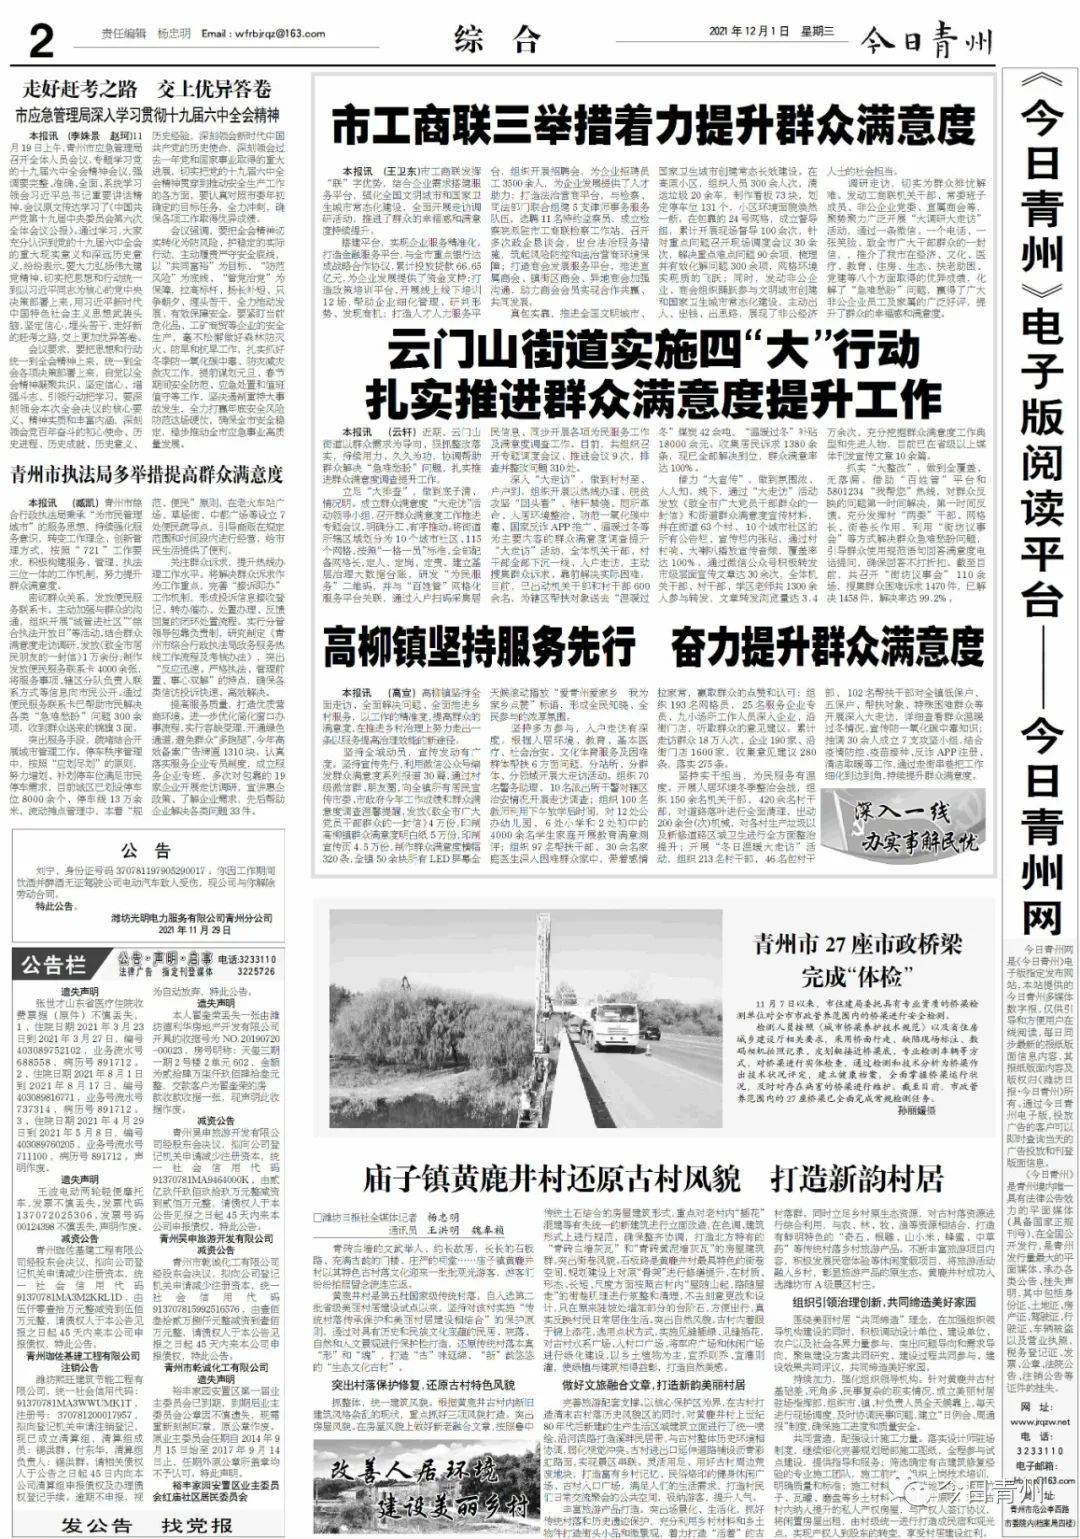 《潍坊日报·文化青州》数字报 